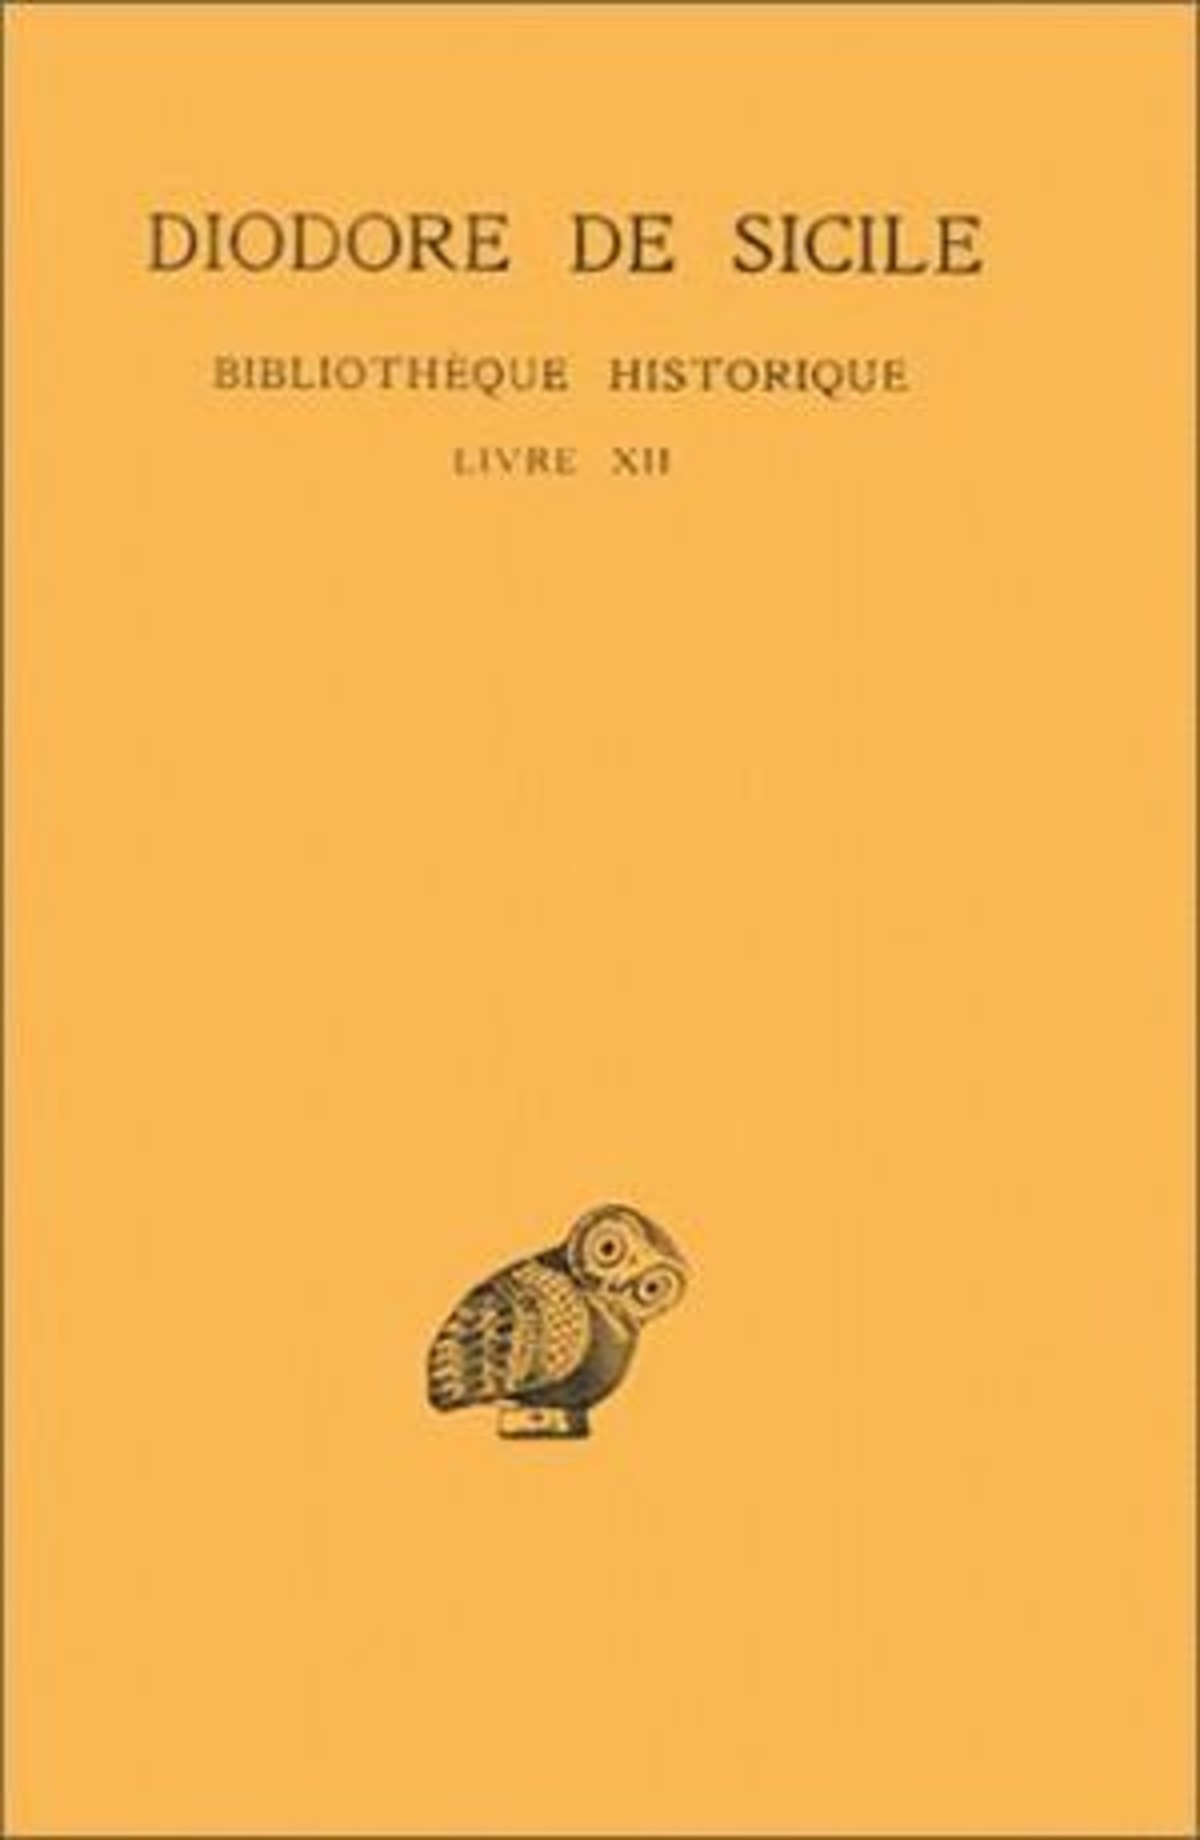 Bibliothèque historique. Tome VII : Livre XII